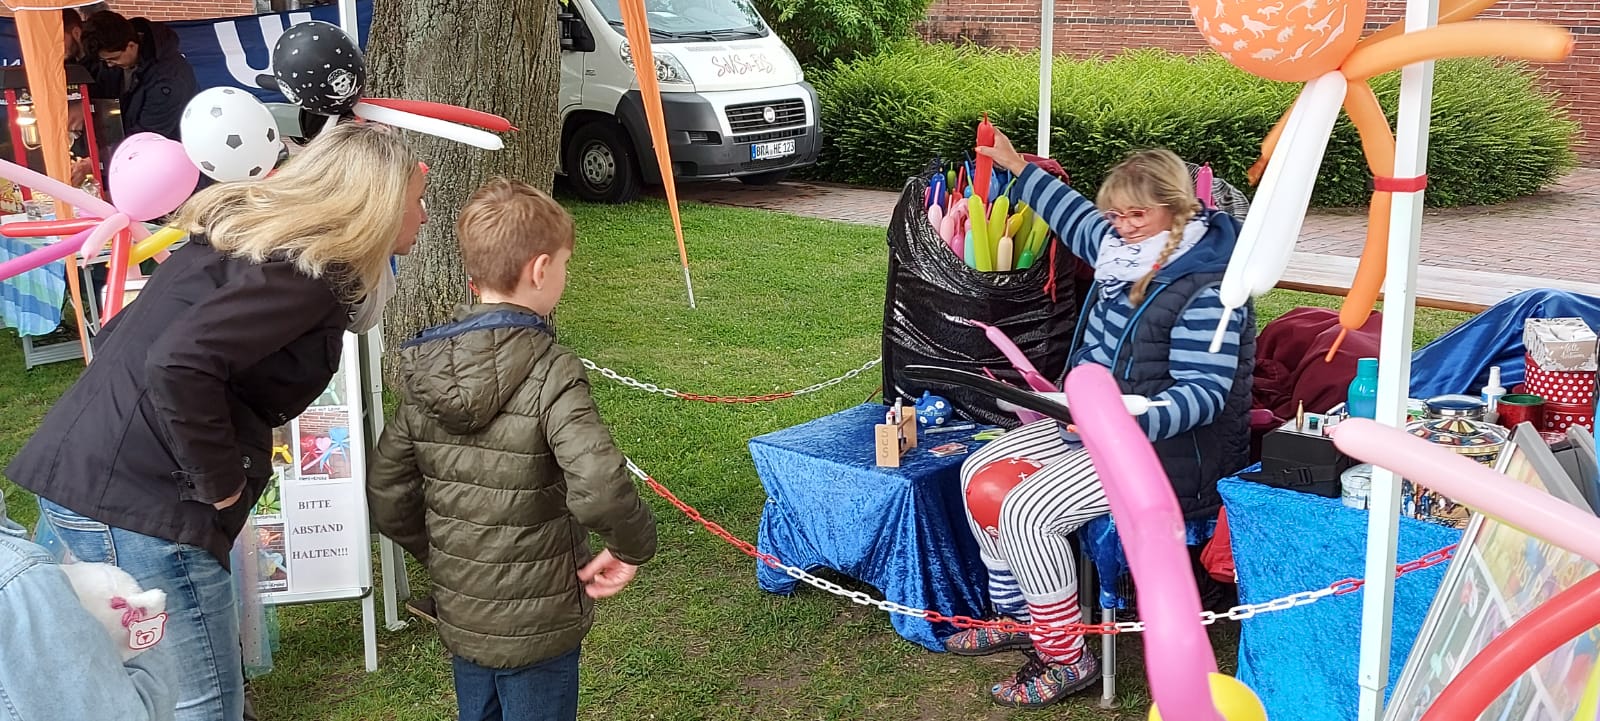 Trotz dem zeitweise schlechtem Wetter und starken Regenschauern wurde das Kinderfest der Diakonie gut besucht. Fotos: Diakonie Wesermarsch